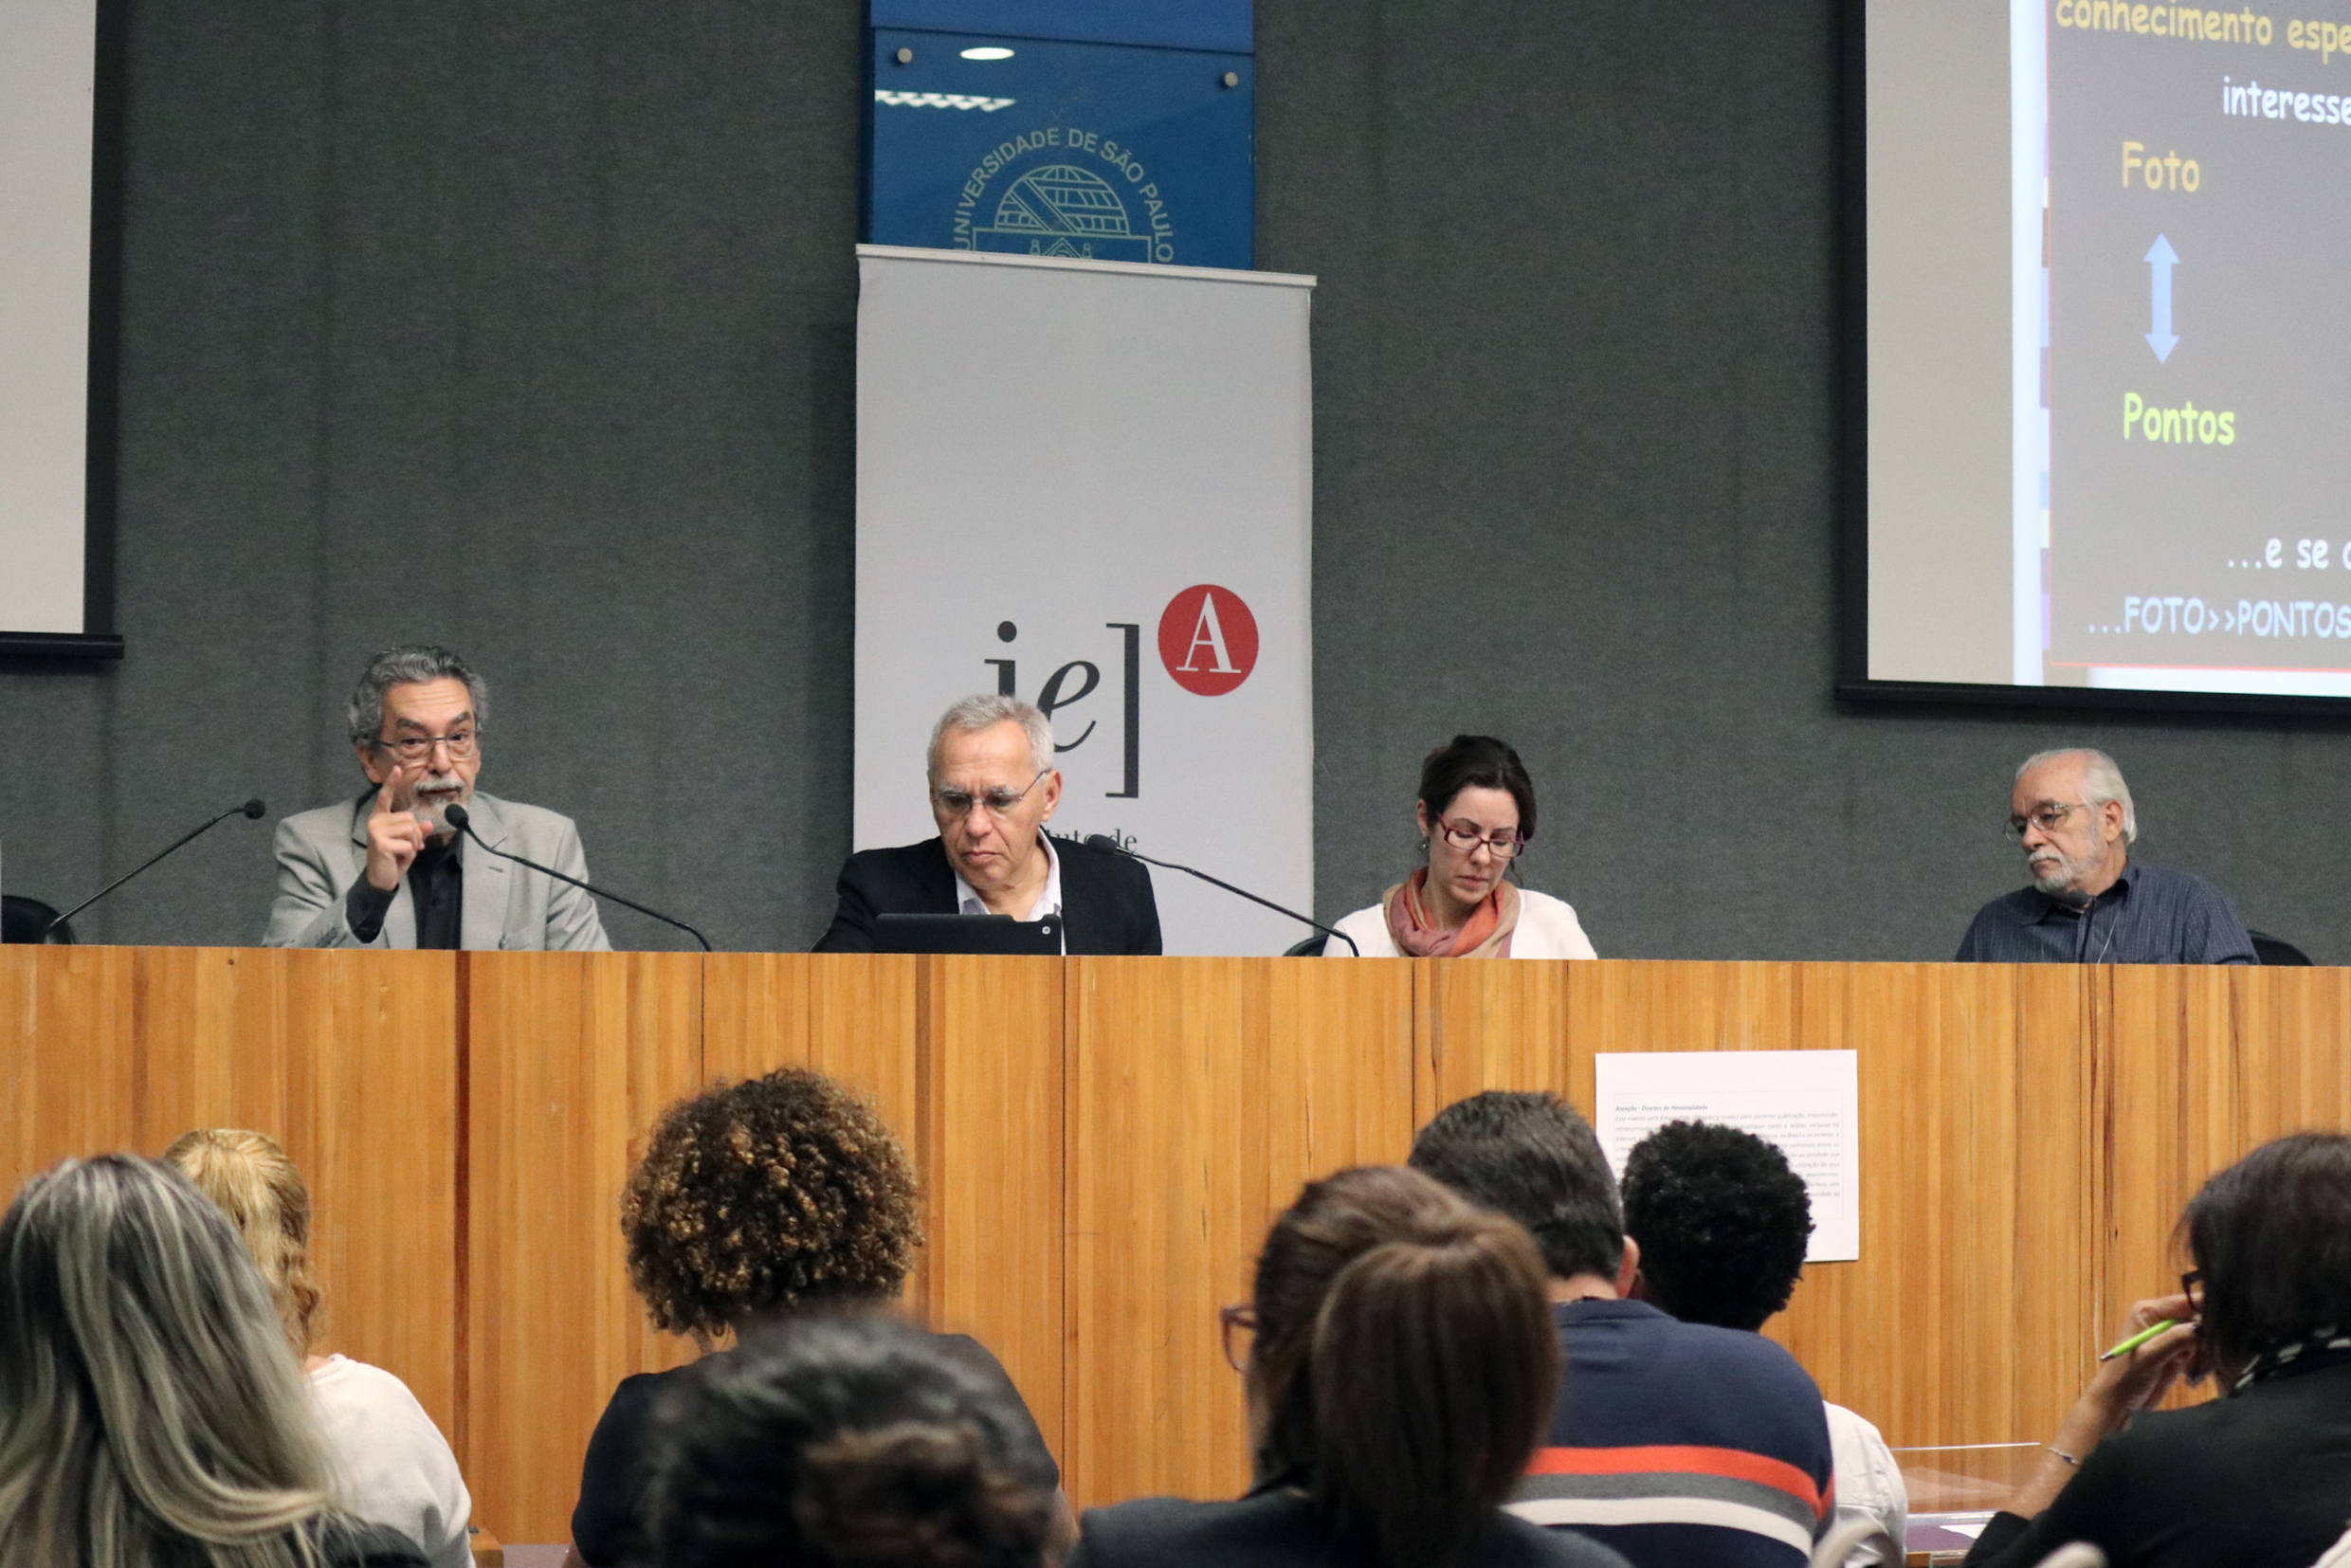 Nílson José Machado, Lino de Macedo, Gisela Tartuce e Luís Carlos de Menezes 